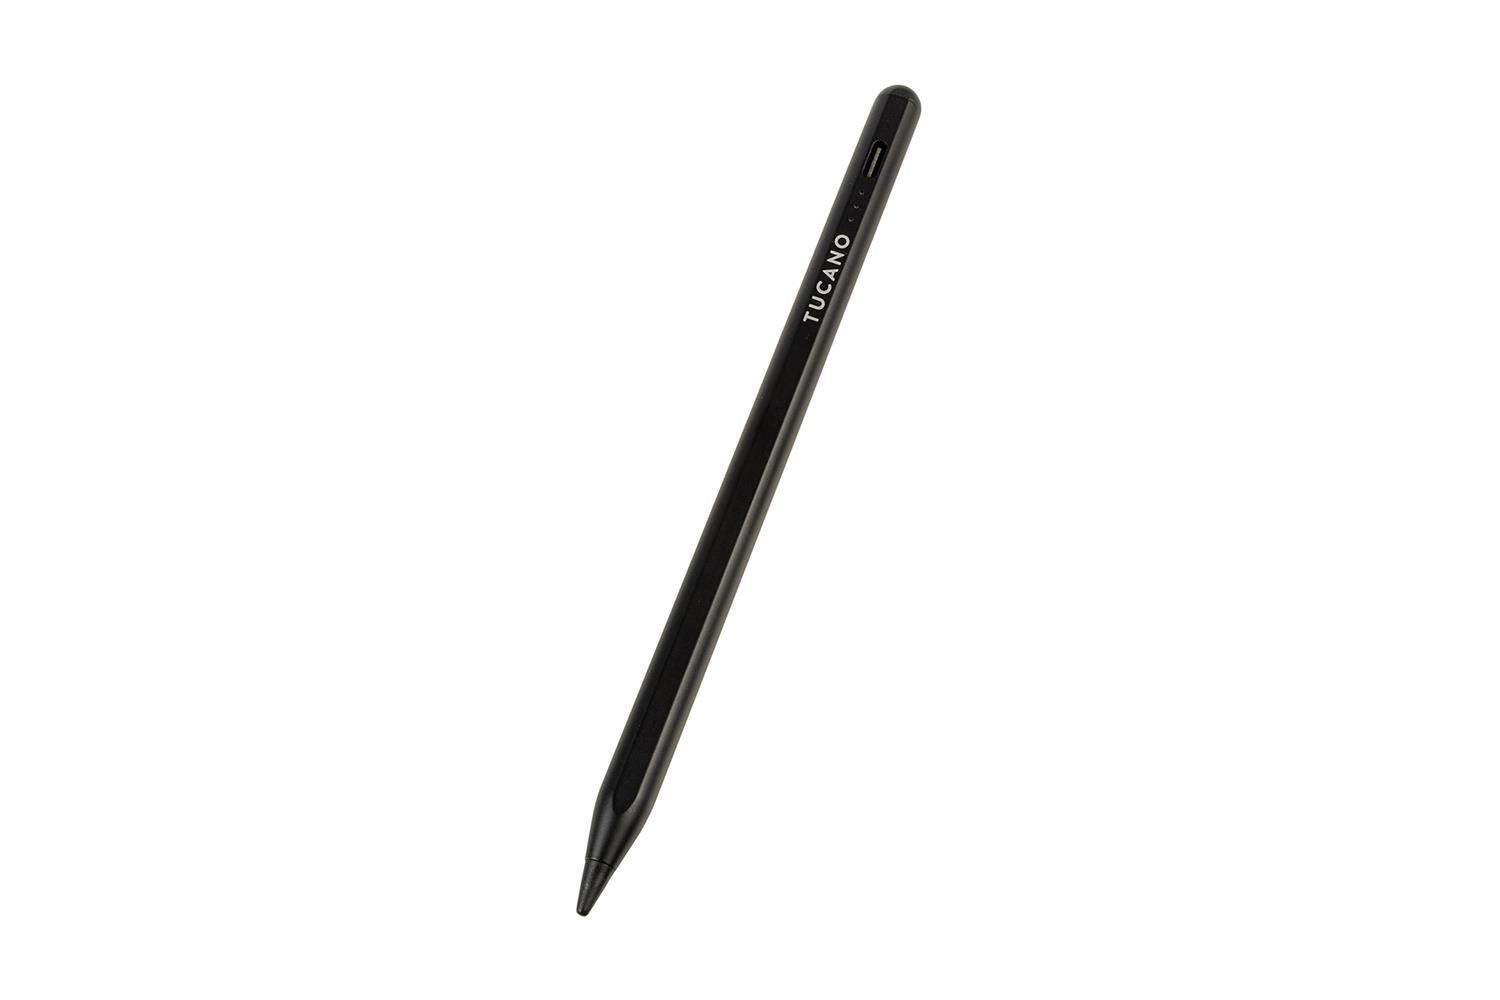 Tucano Universal Active Stylus Pen - Eingabestift für alle gängigen Smartphones, iPads, Tablets - Schwarz